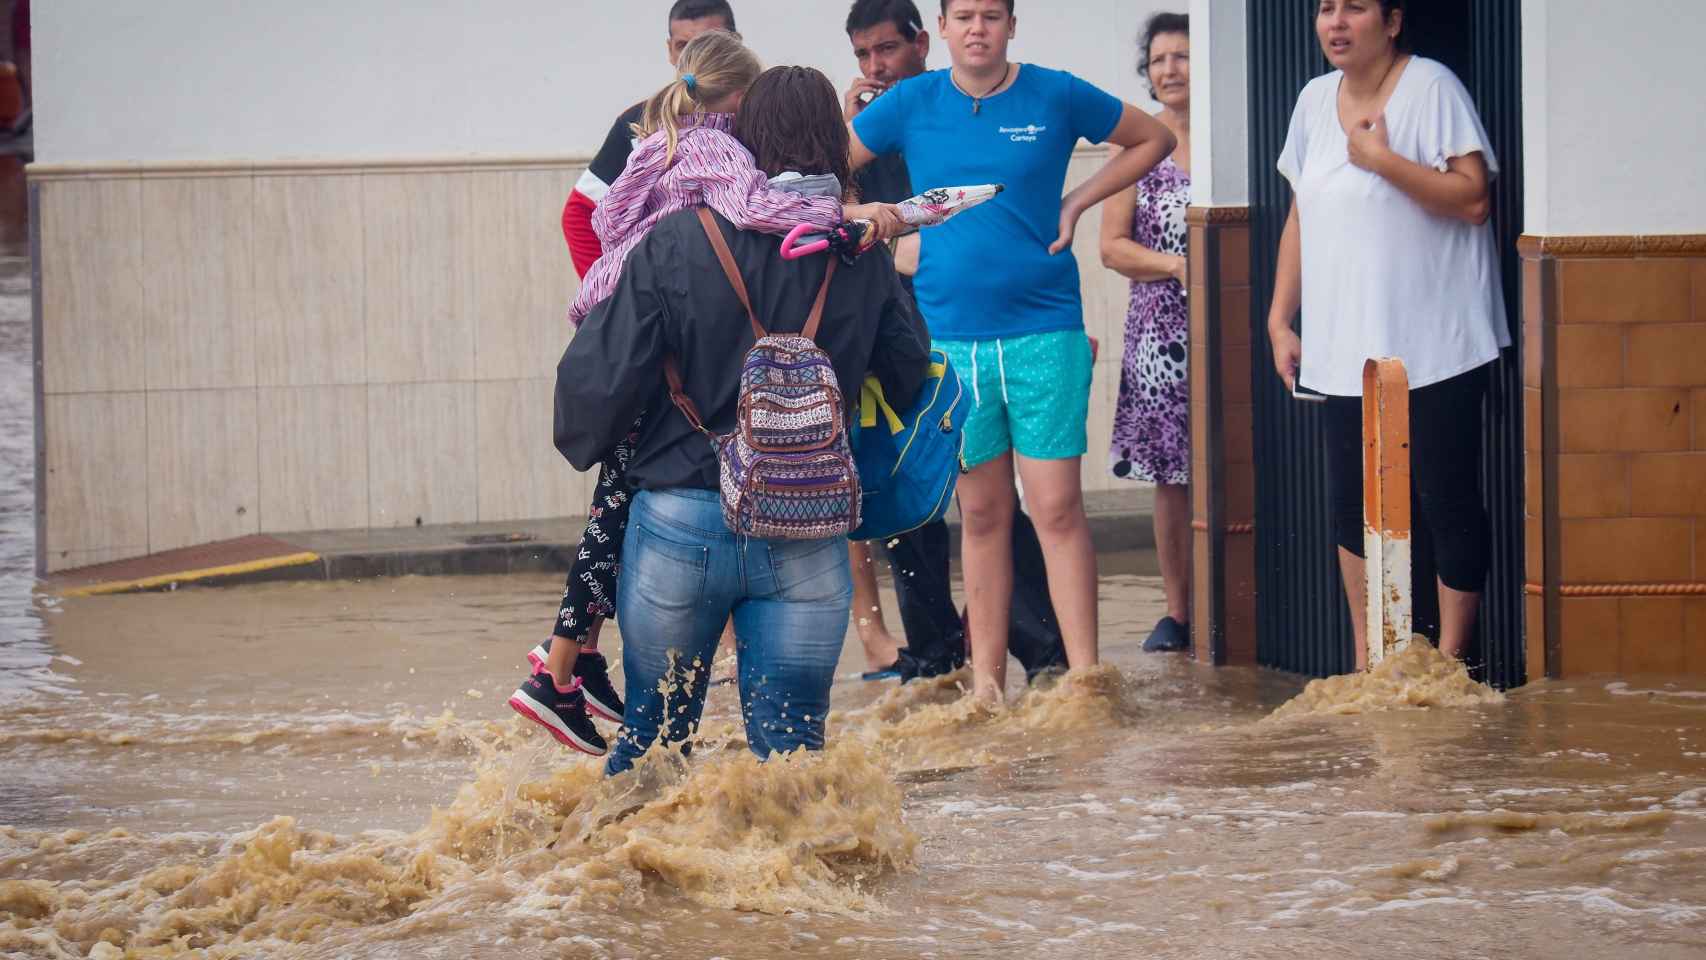 Vecinos de Lepe (Huelva) observan a una mujer con una niña en brazos cruzando una calle inundada tras las fuertes lluvias.